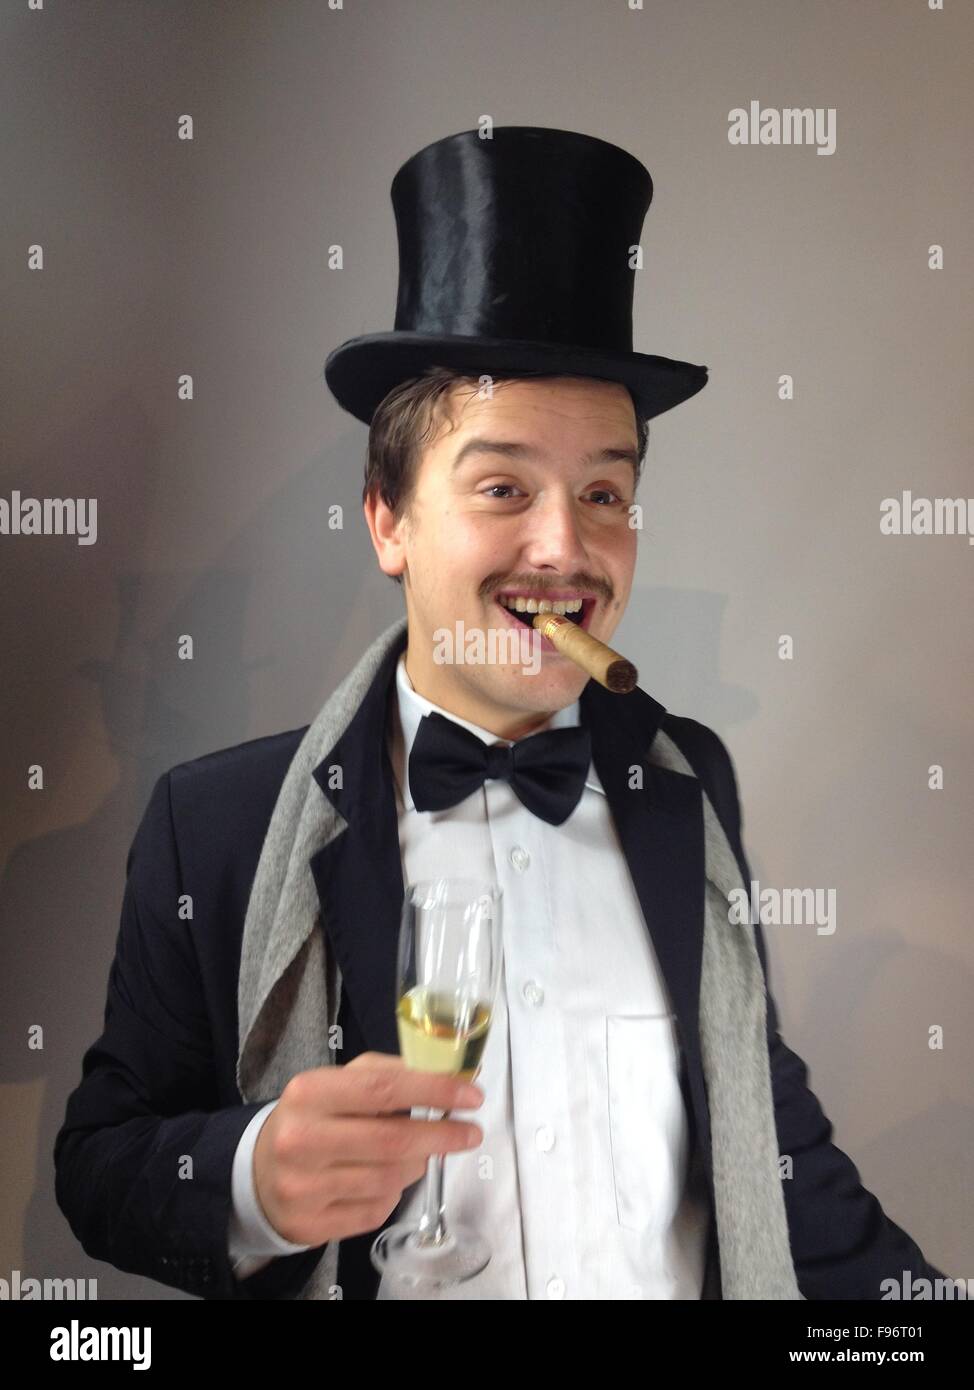 Homme avec chapeau haut de forme et cigare Photo Stock - Alamy